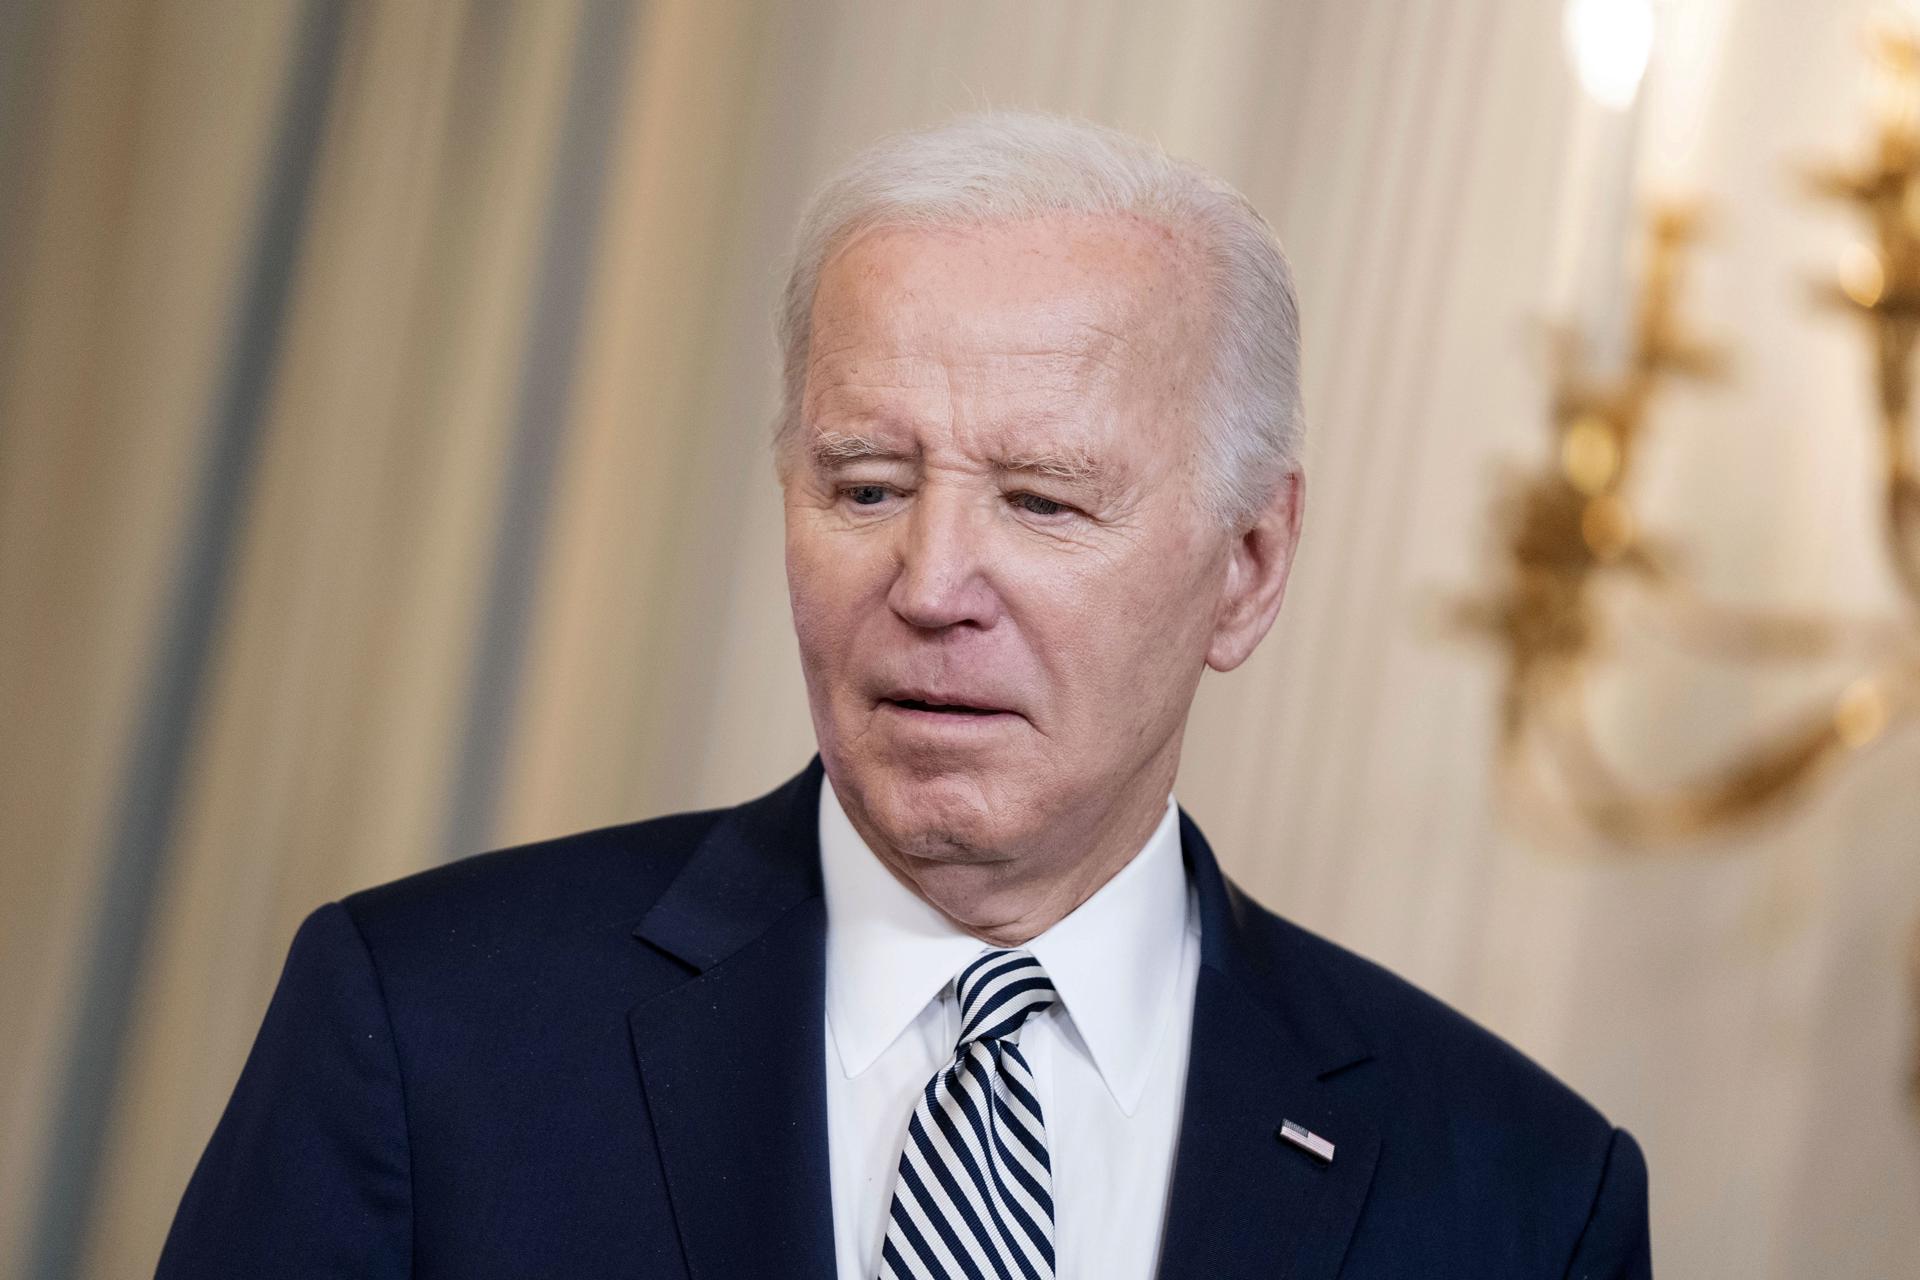 Biden pide apoyo para derrotar a Trump, “una amenaza para el futuro” del país